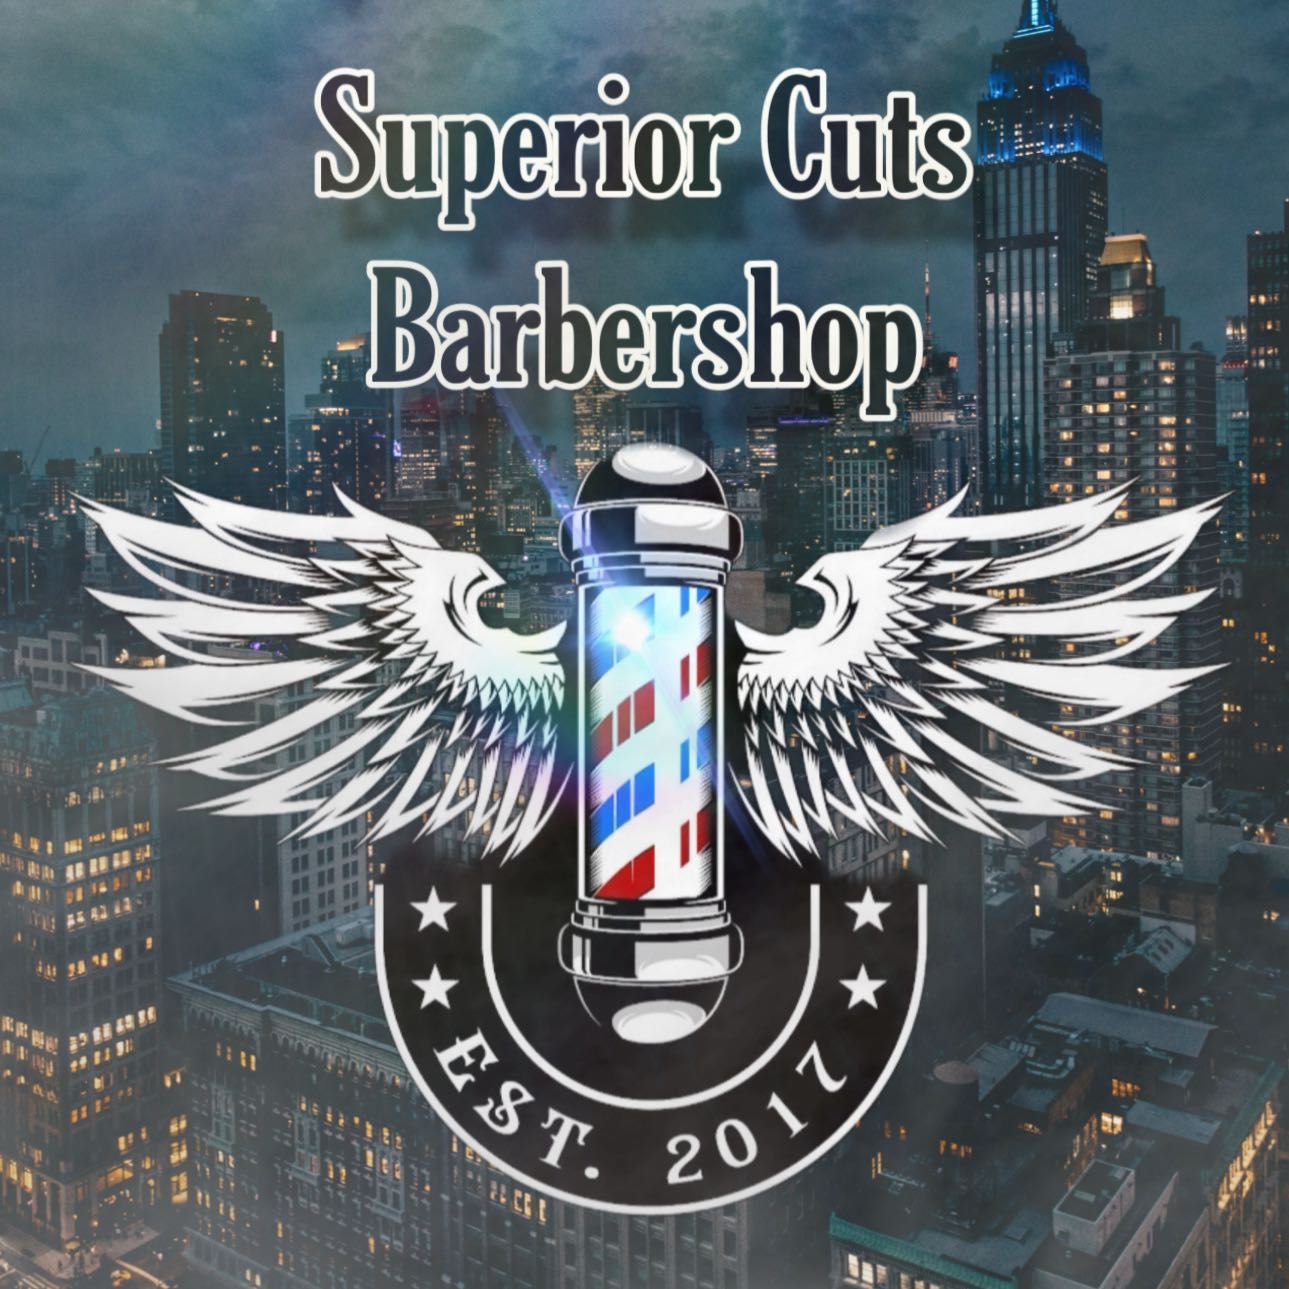 Superior Cuts barbershop, 35 Nason St, Maynard, 01754